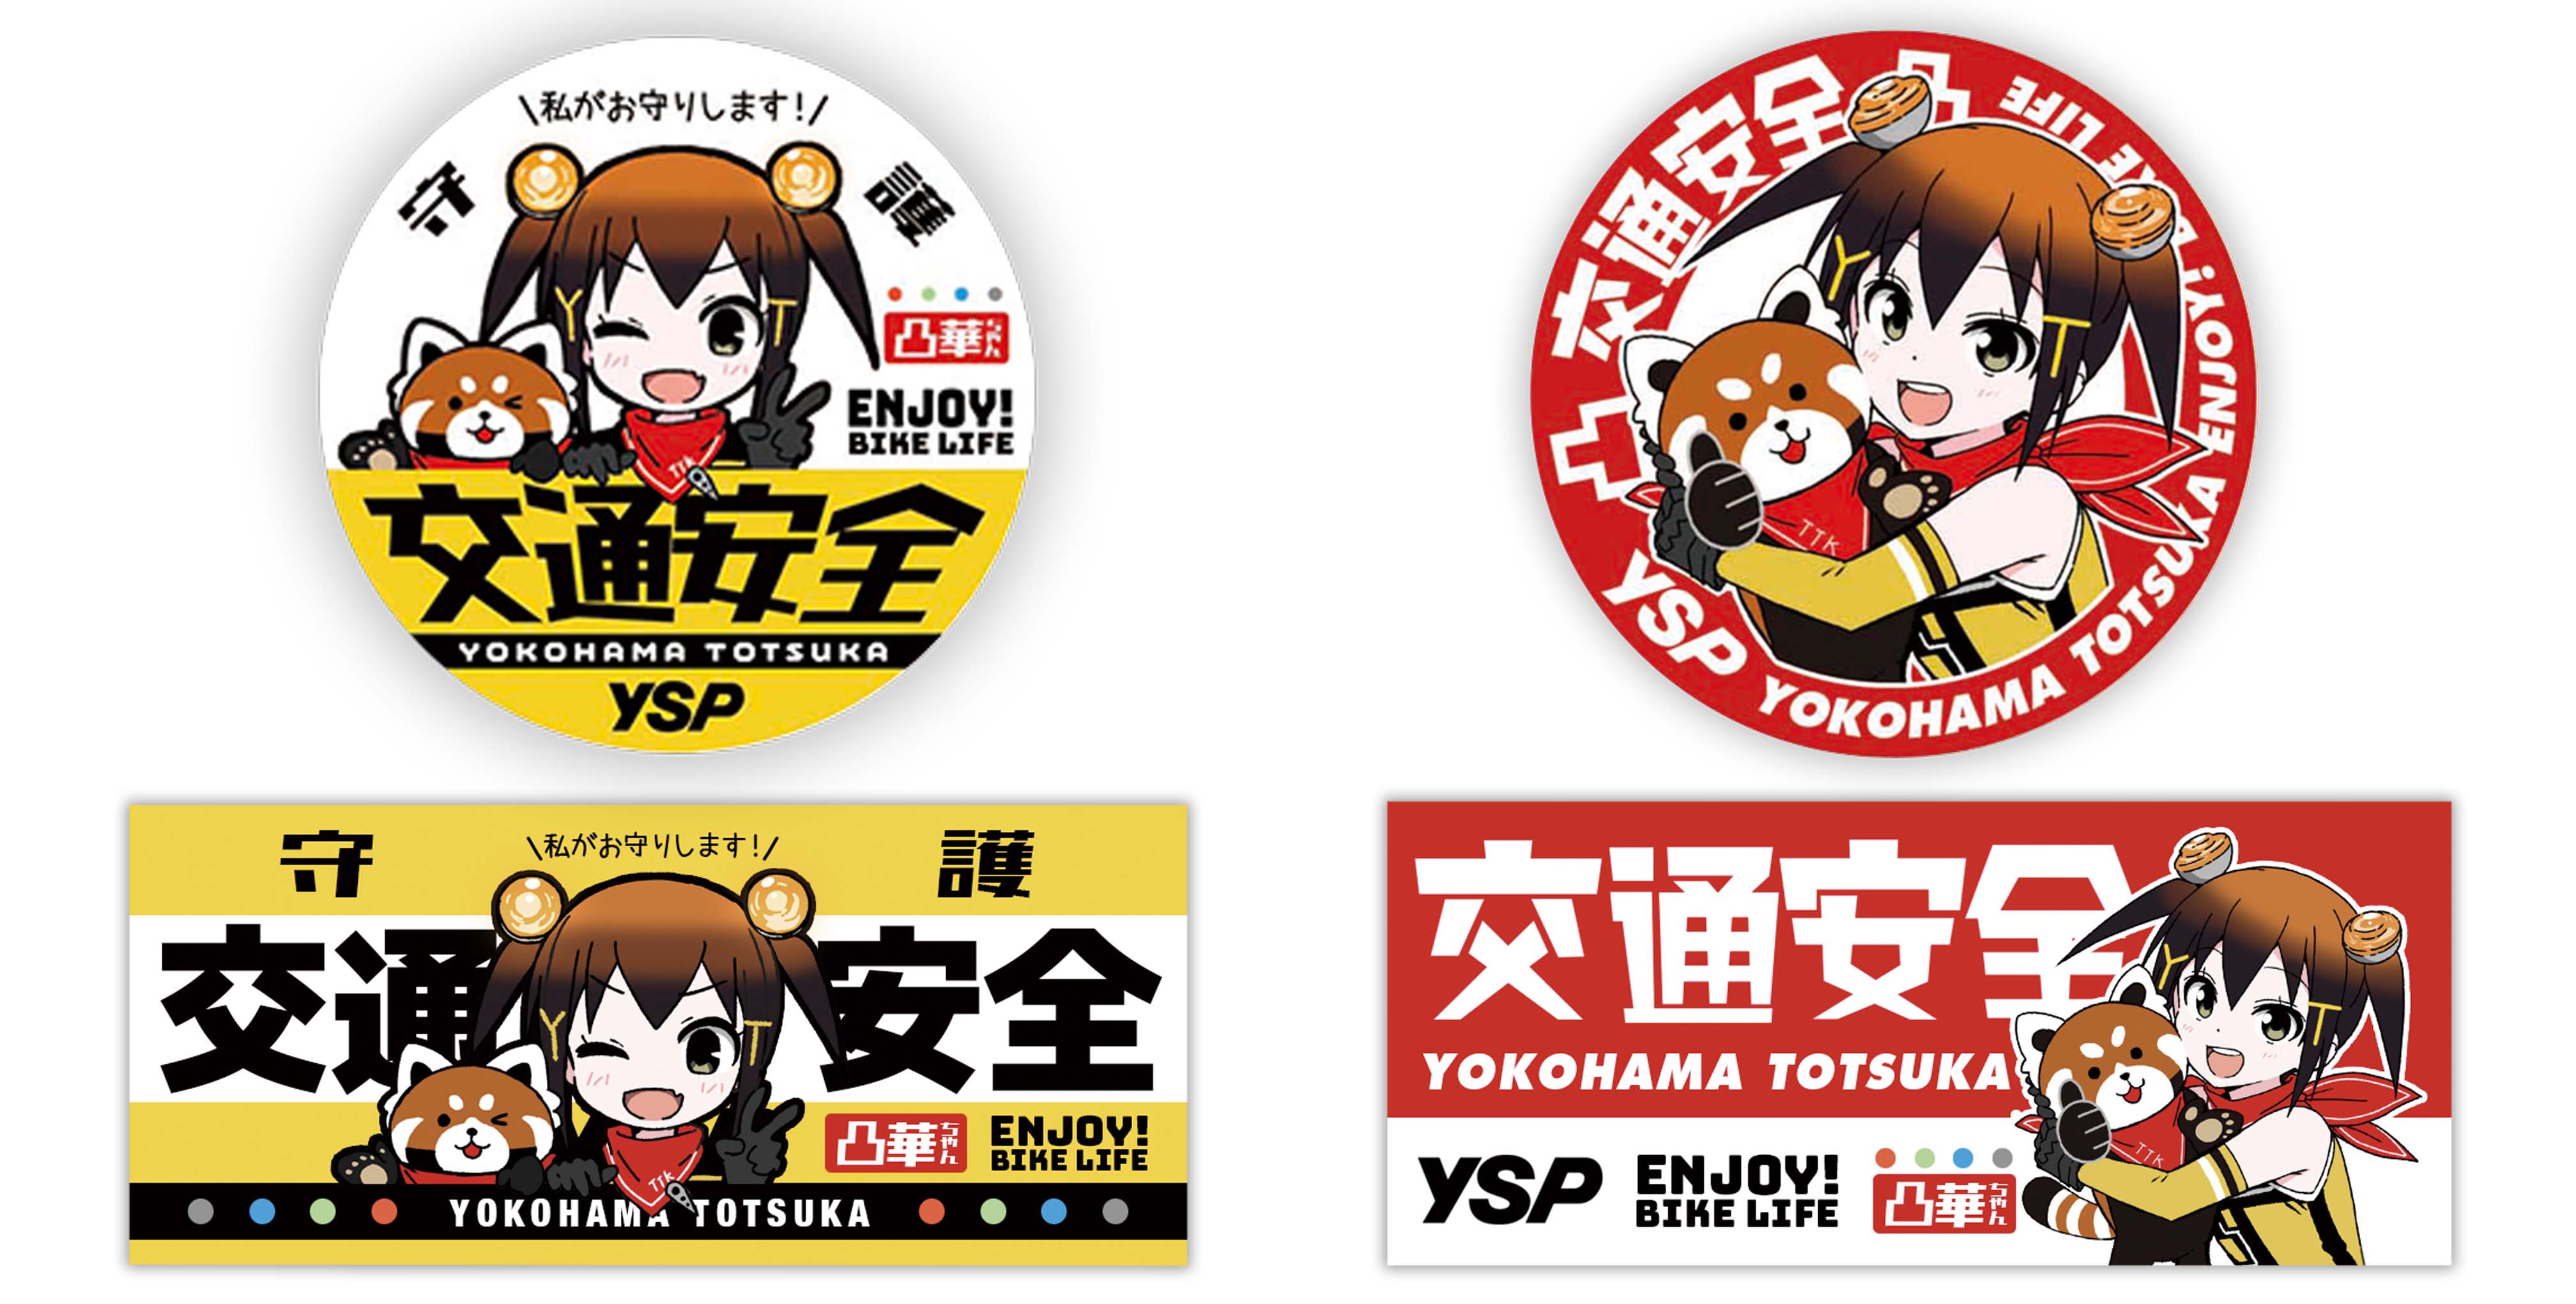 7つのサポート特典 | YSP横浜戸塚のオリジナルサービスやコンプリート車両